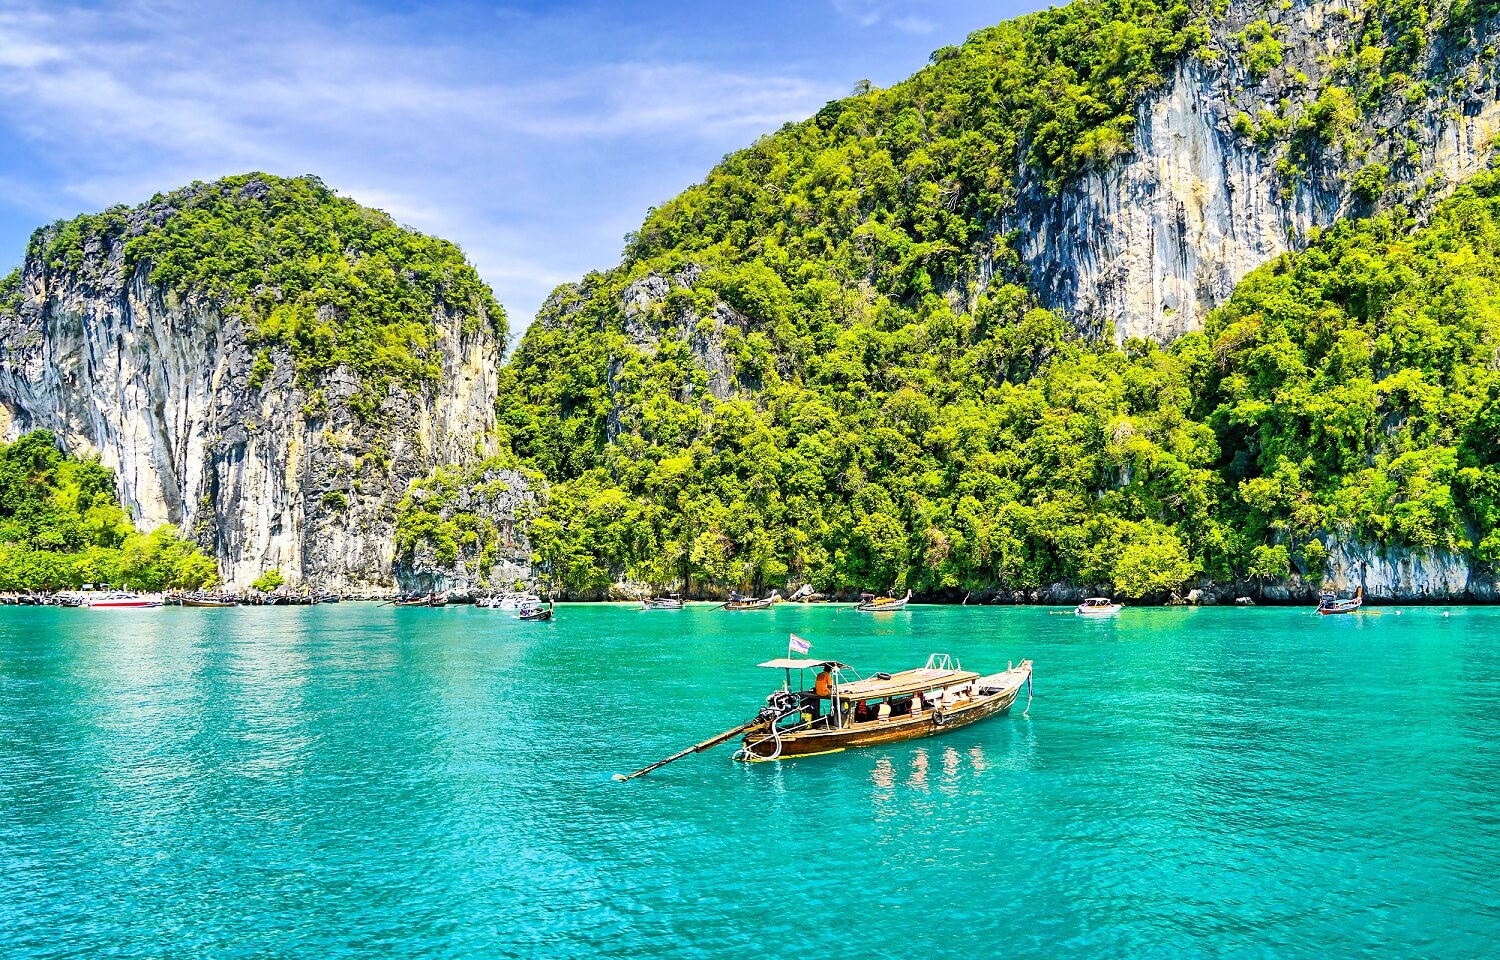 Phuket, Thailand Travel Guide – eLaine Asia